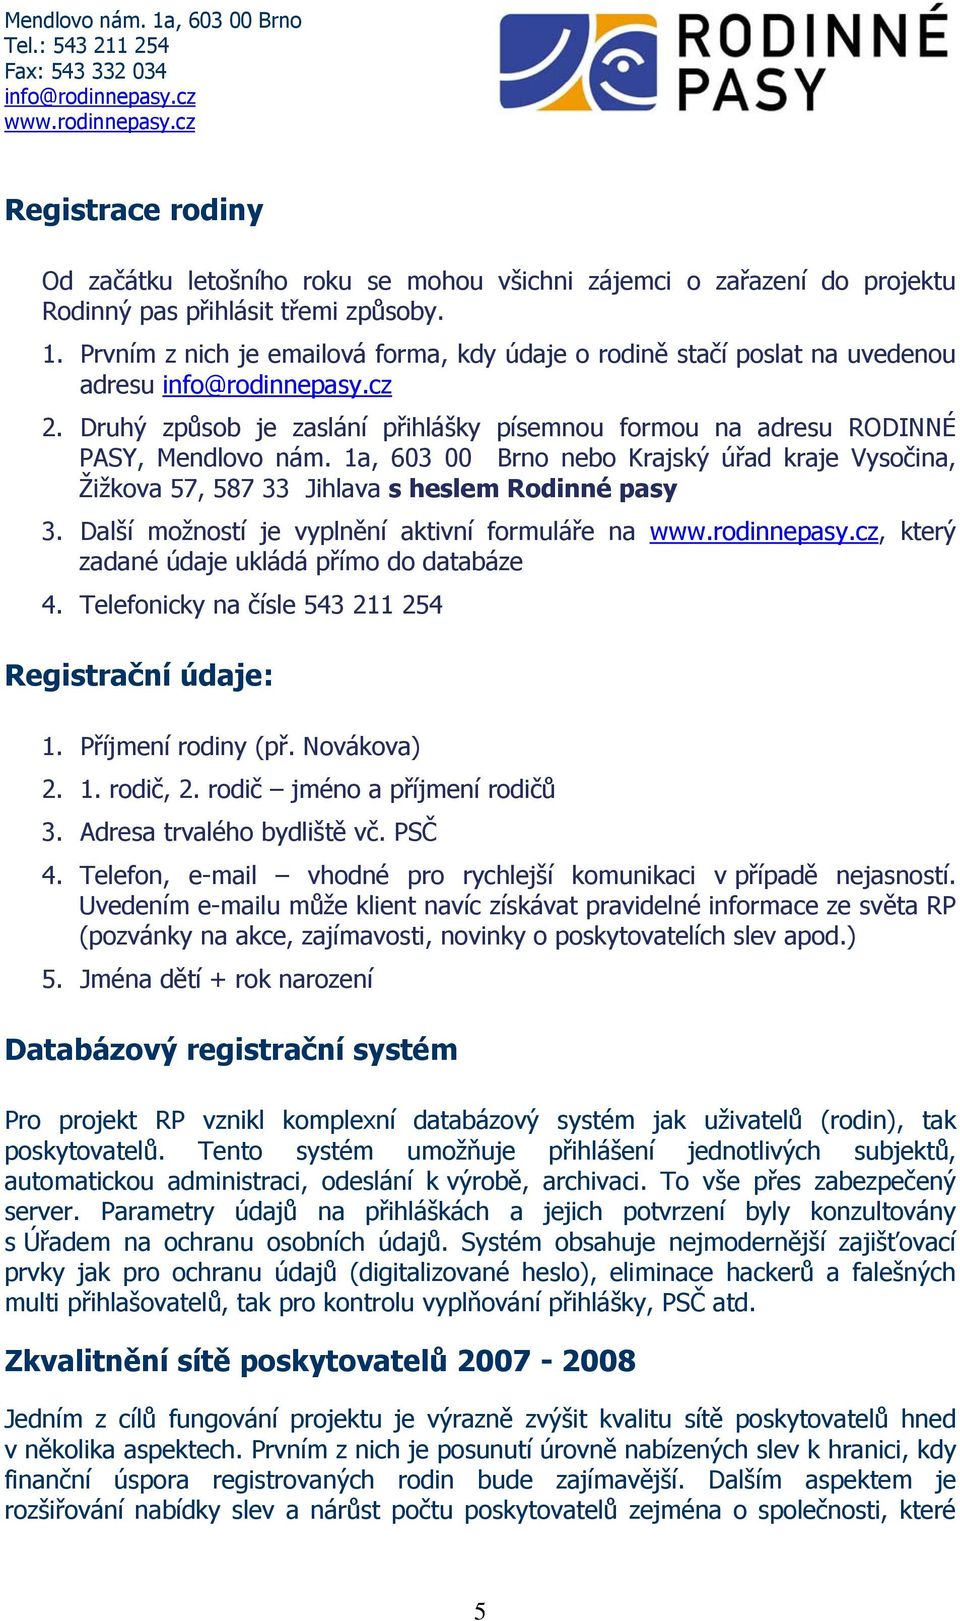 1a, 603 00 Brno nebo Krajský úřad kraje Vysočina, Žižkova 57, 587 33 Jihlava s heslem Rodinné pasy 3. Další možností je vyplnění aktivní formuláře na, který zadané údaje ukládá přímo do databáze 4.